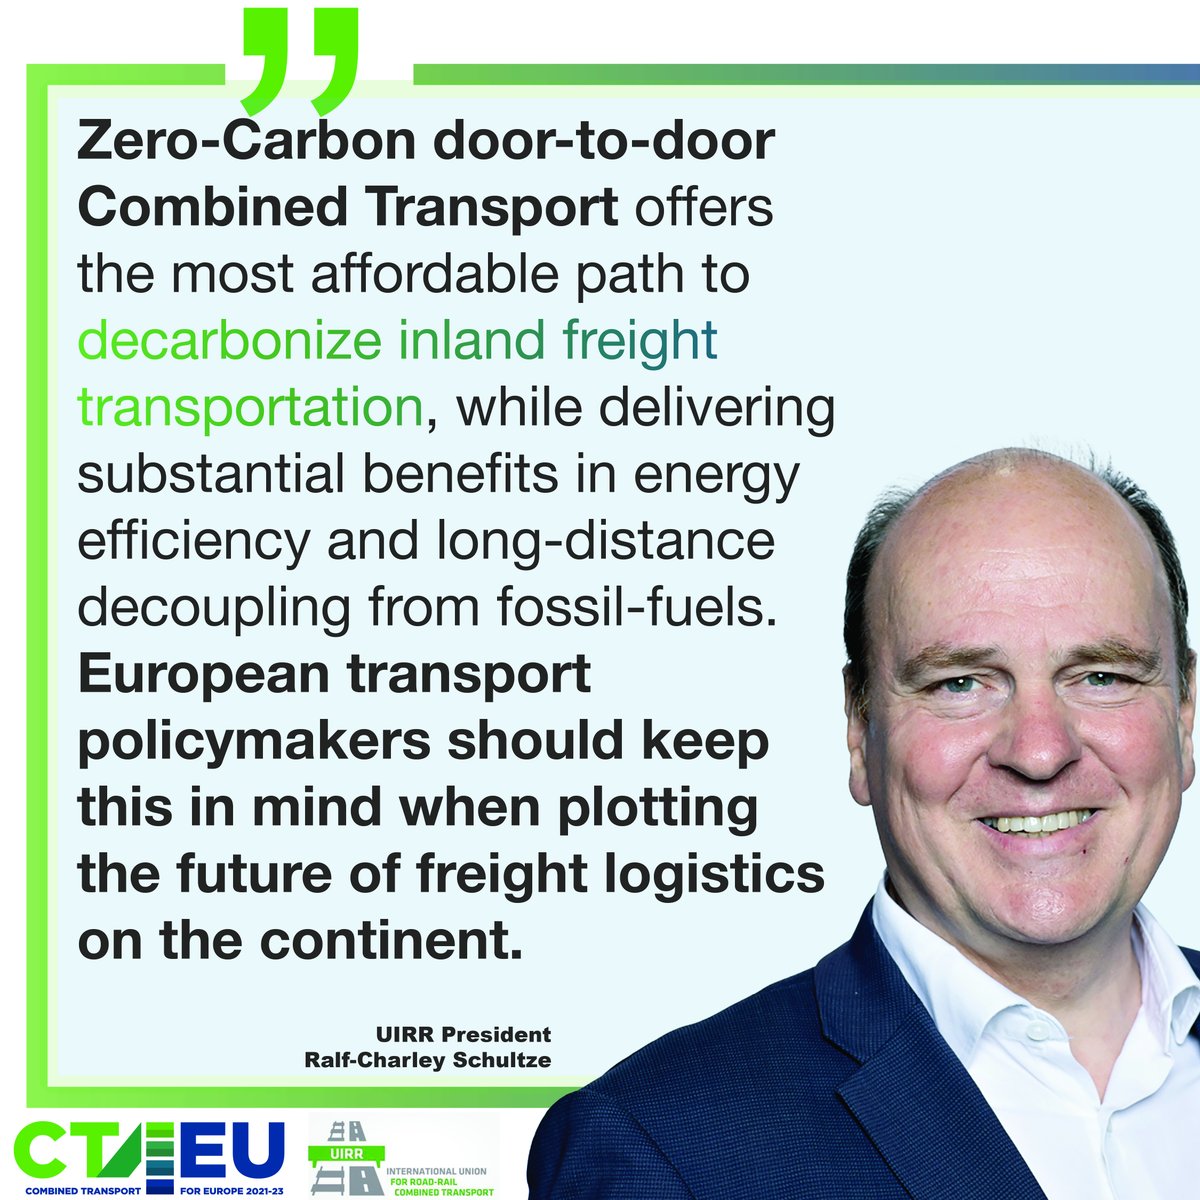 #Ralf-CharleySchultze #UIRR #CT4EU #zerocarbon #doortodoor #combinedtransport #ZCCT #renewable #energy #freighttransportation #energyefficiency #decarbonisation